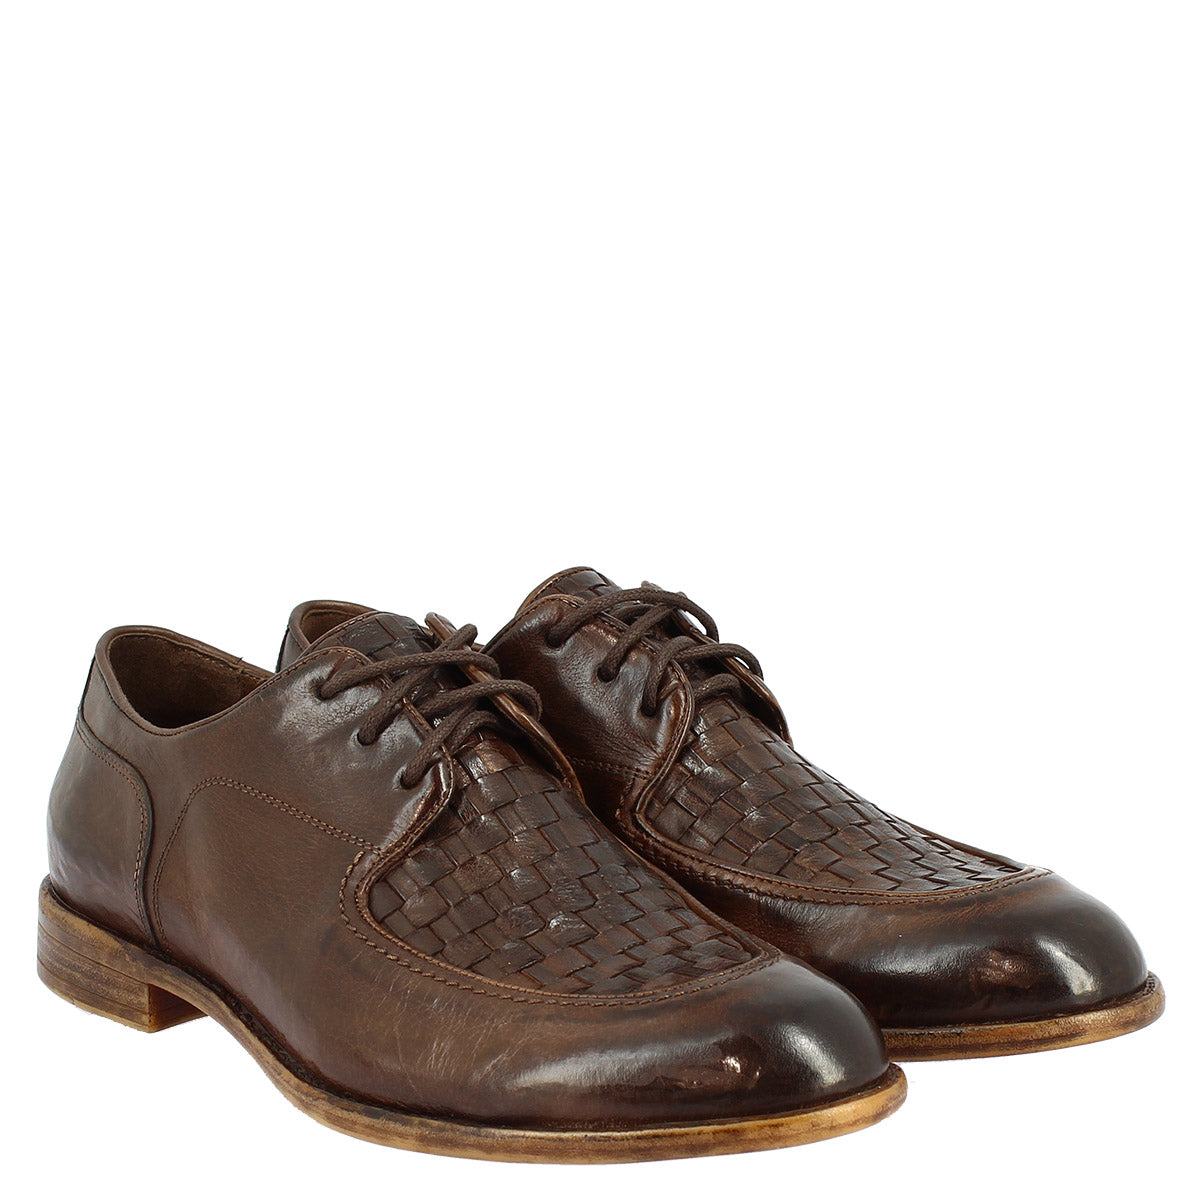 Chaussures à lacets faites à la main pour hommes en cuir marron foncé